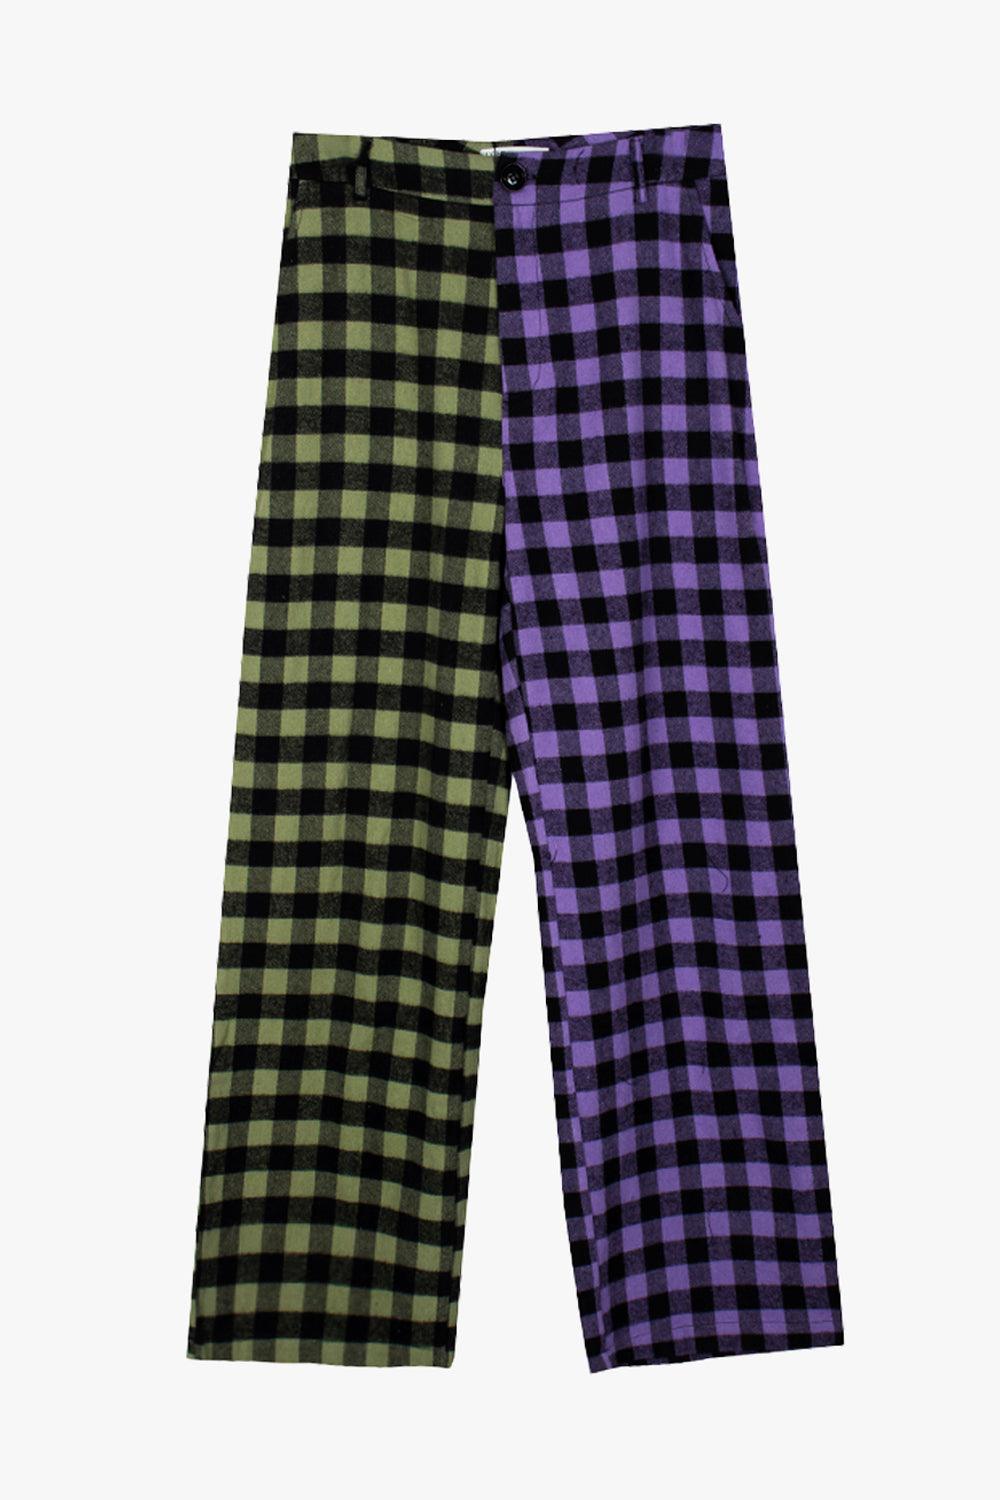 Different Сolor Joker Plaid Pants - Aesthetic Clothes Shop